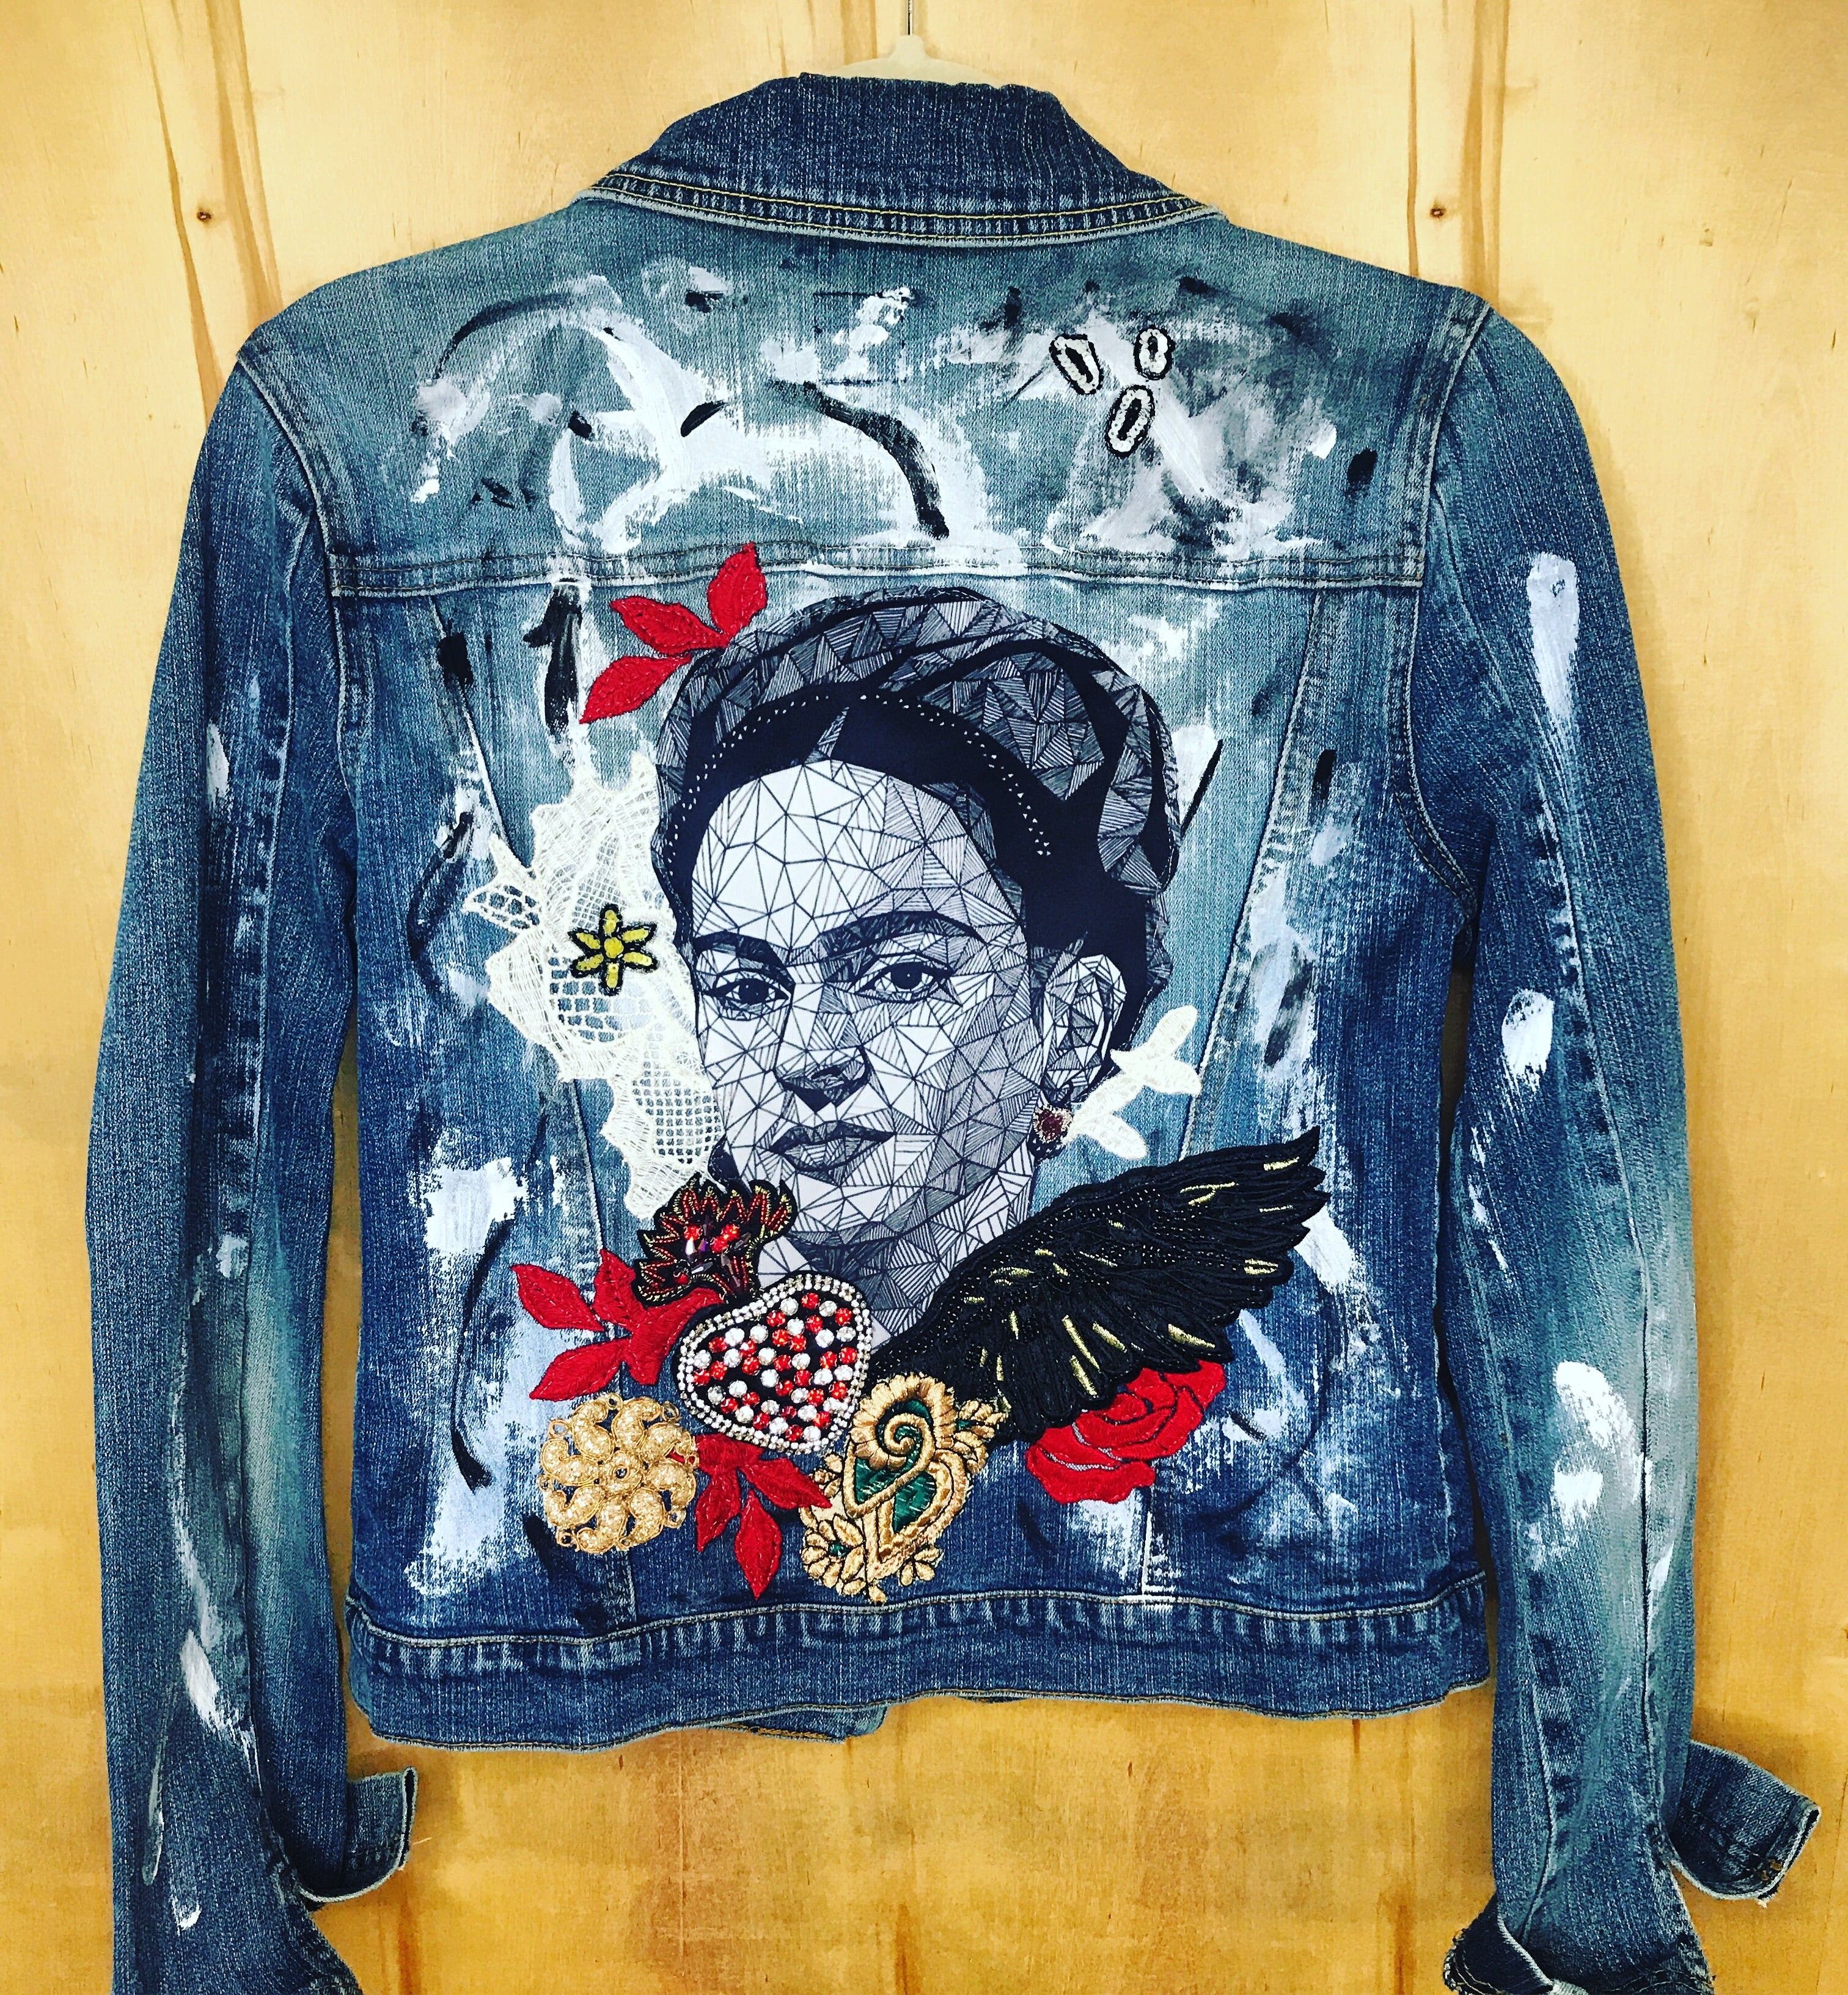 Frida bespoke hand painted Jacket